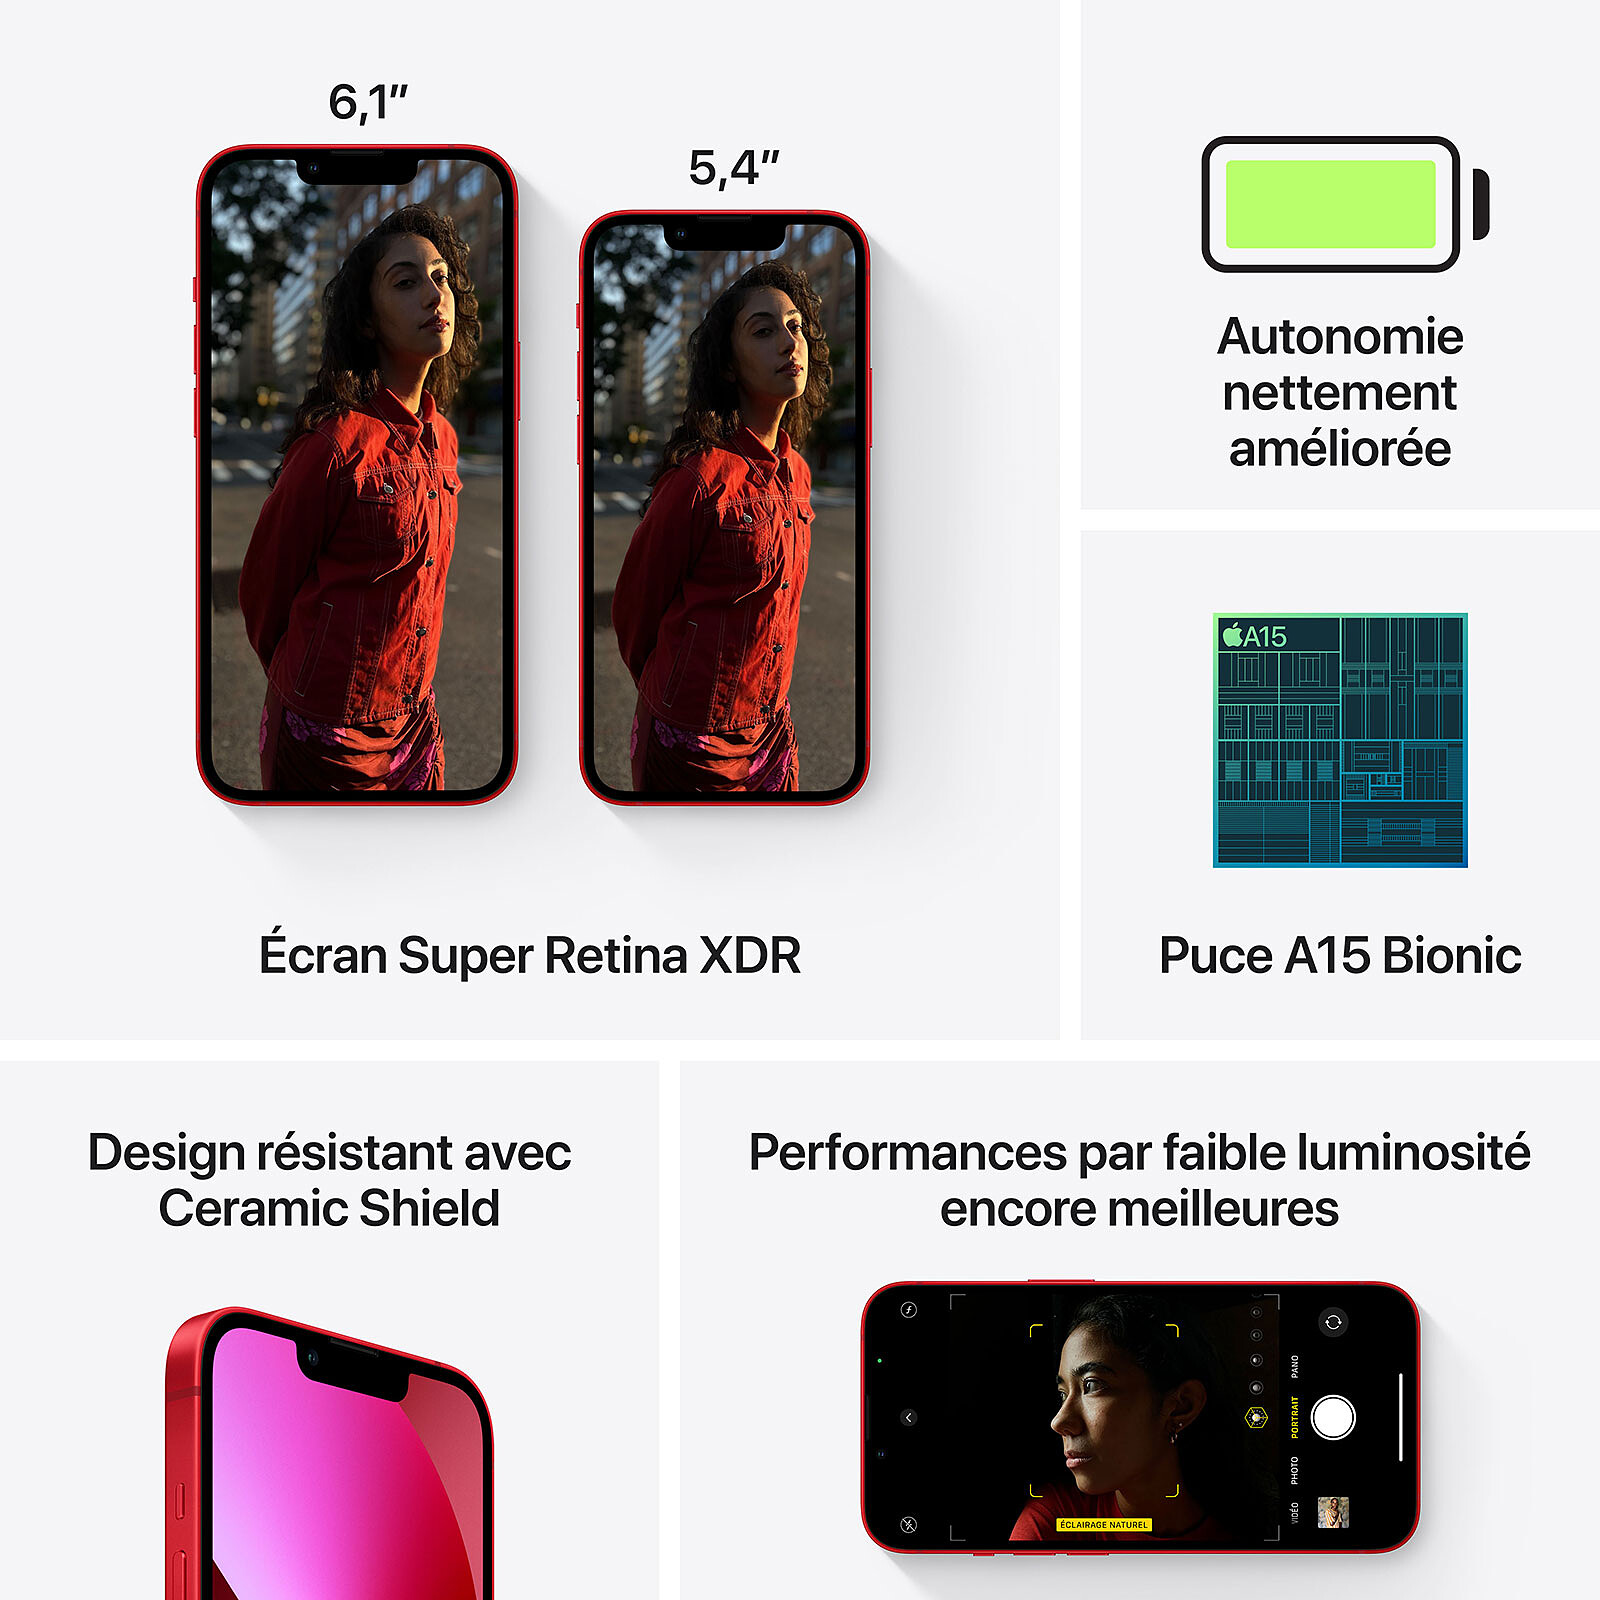 Apple iPhone 13 256 Gb Rojo Reacondicionado Tipo A